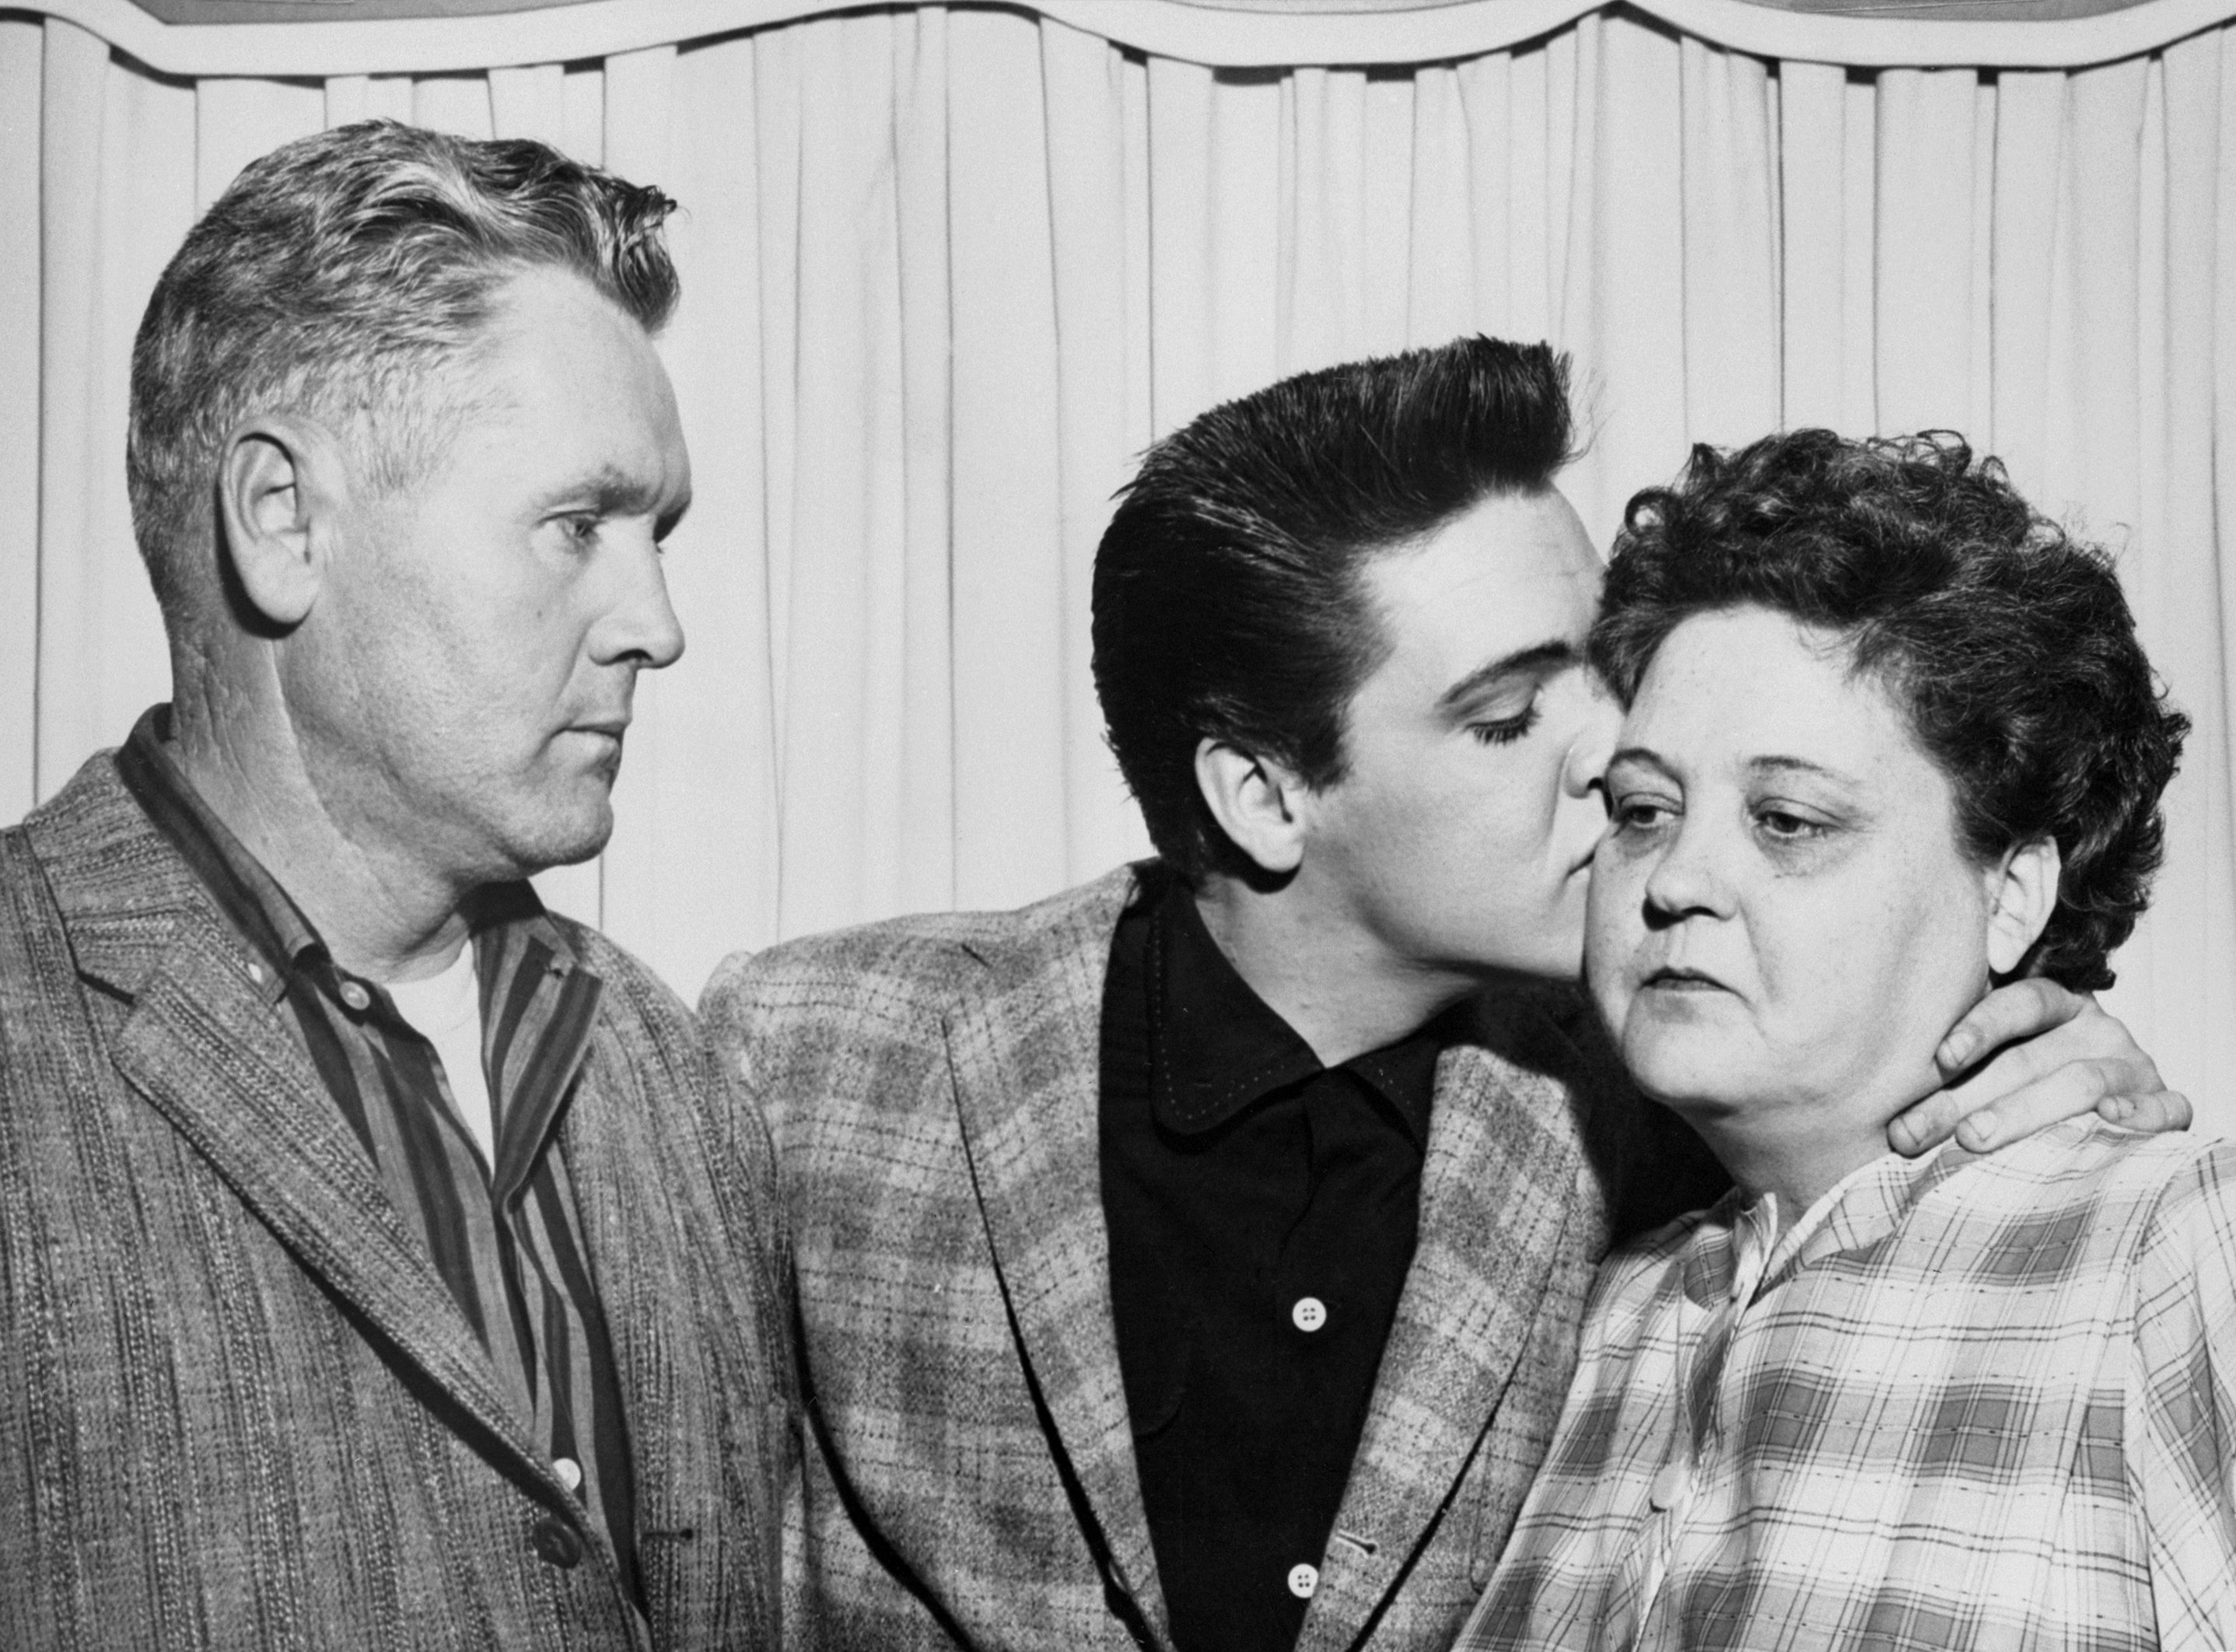 Sänger Elvis Presley küsst seine Mutter Gladys am Vorabend seiner Einberufung in die Armee und links ist sein Vater Vernon.  |  Quelle: Getty Images